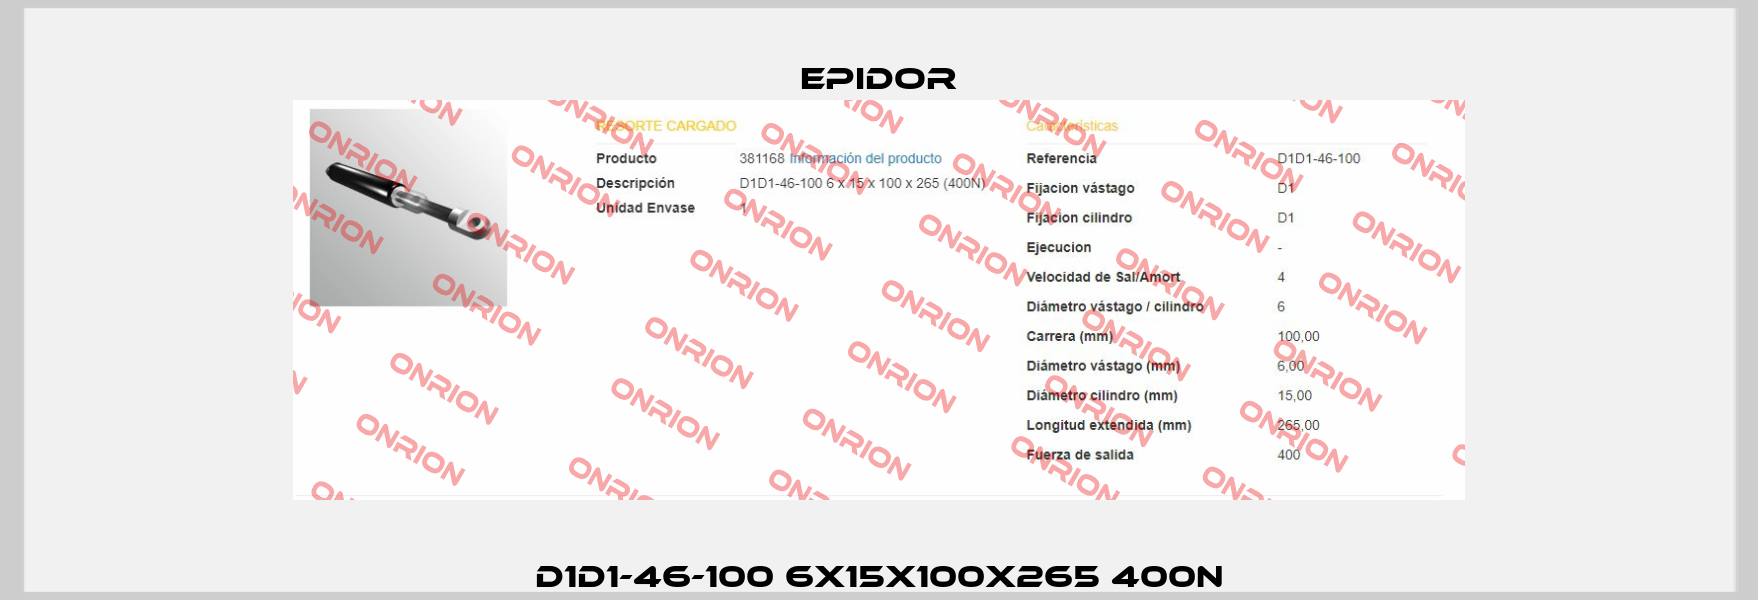 D1D1-46-100 6X15X100X265 400N Epidor